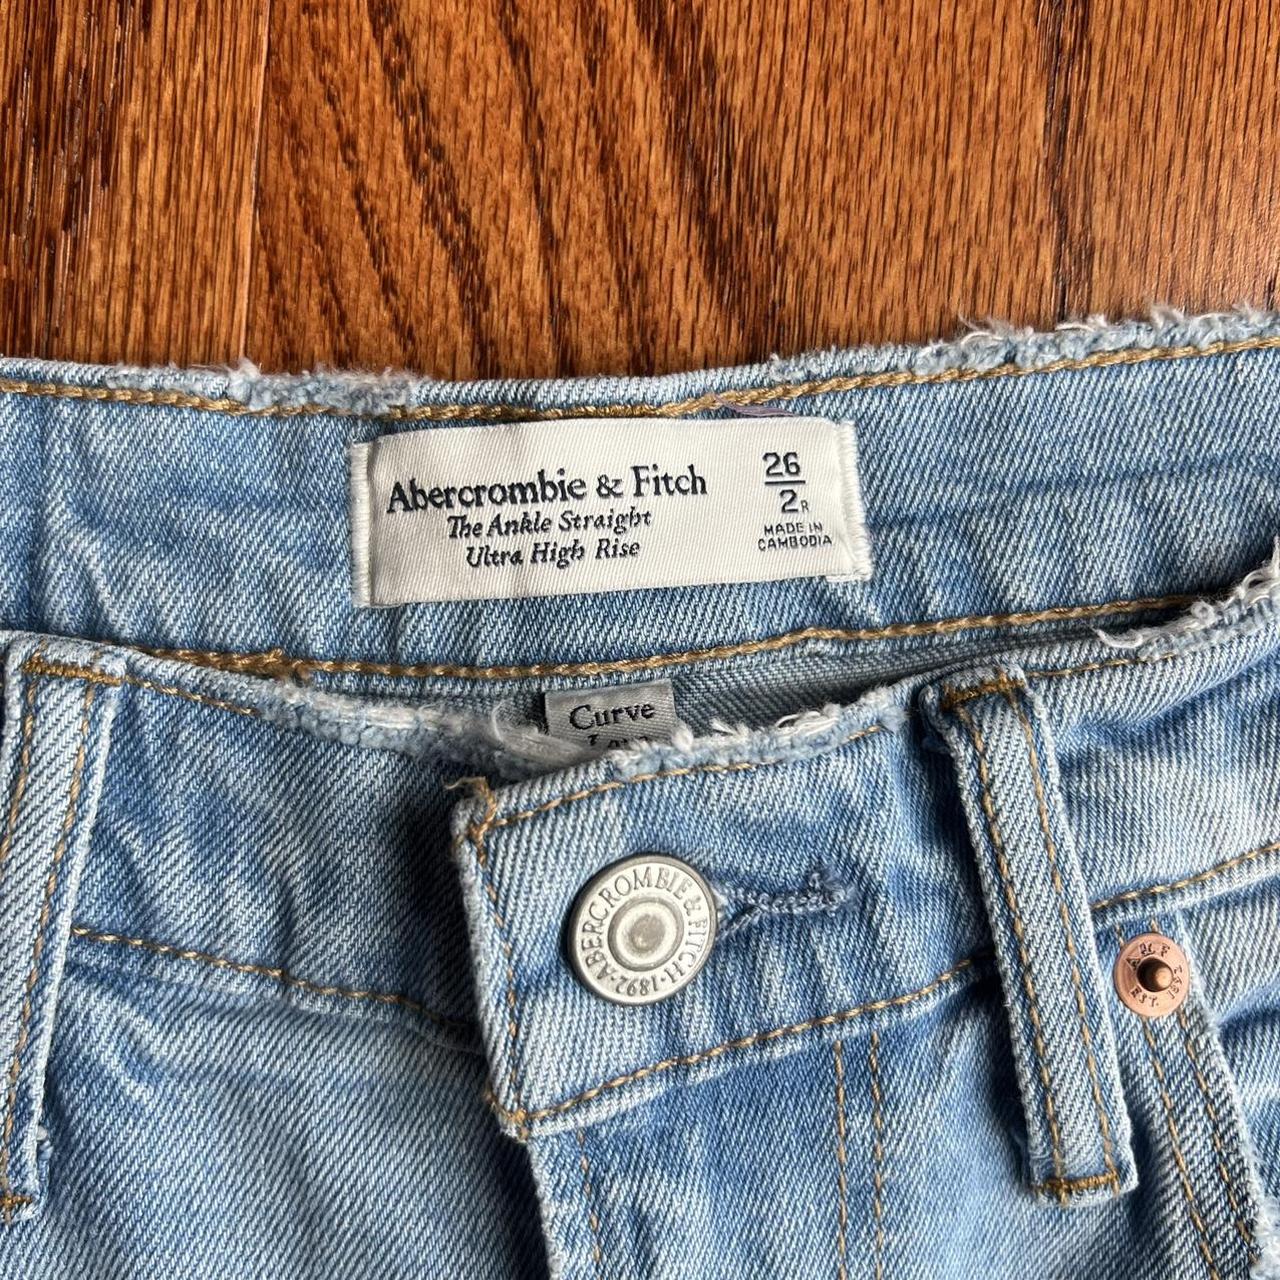 Abercrombie curve love jeans!!!!! Size 26/2!... - Depop